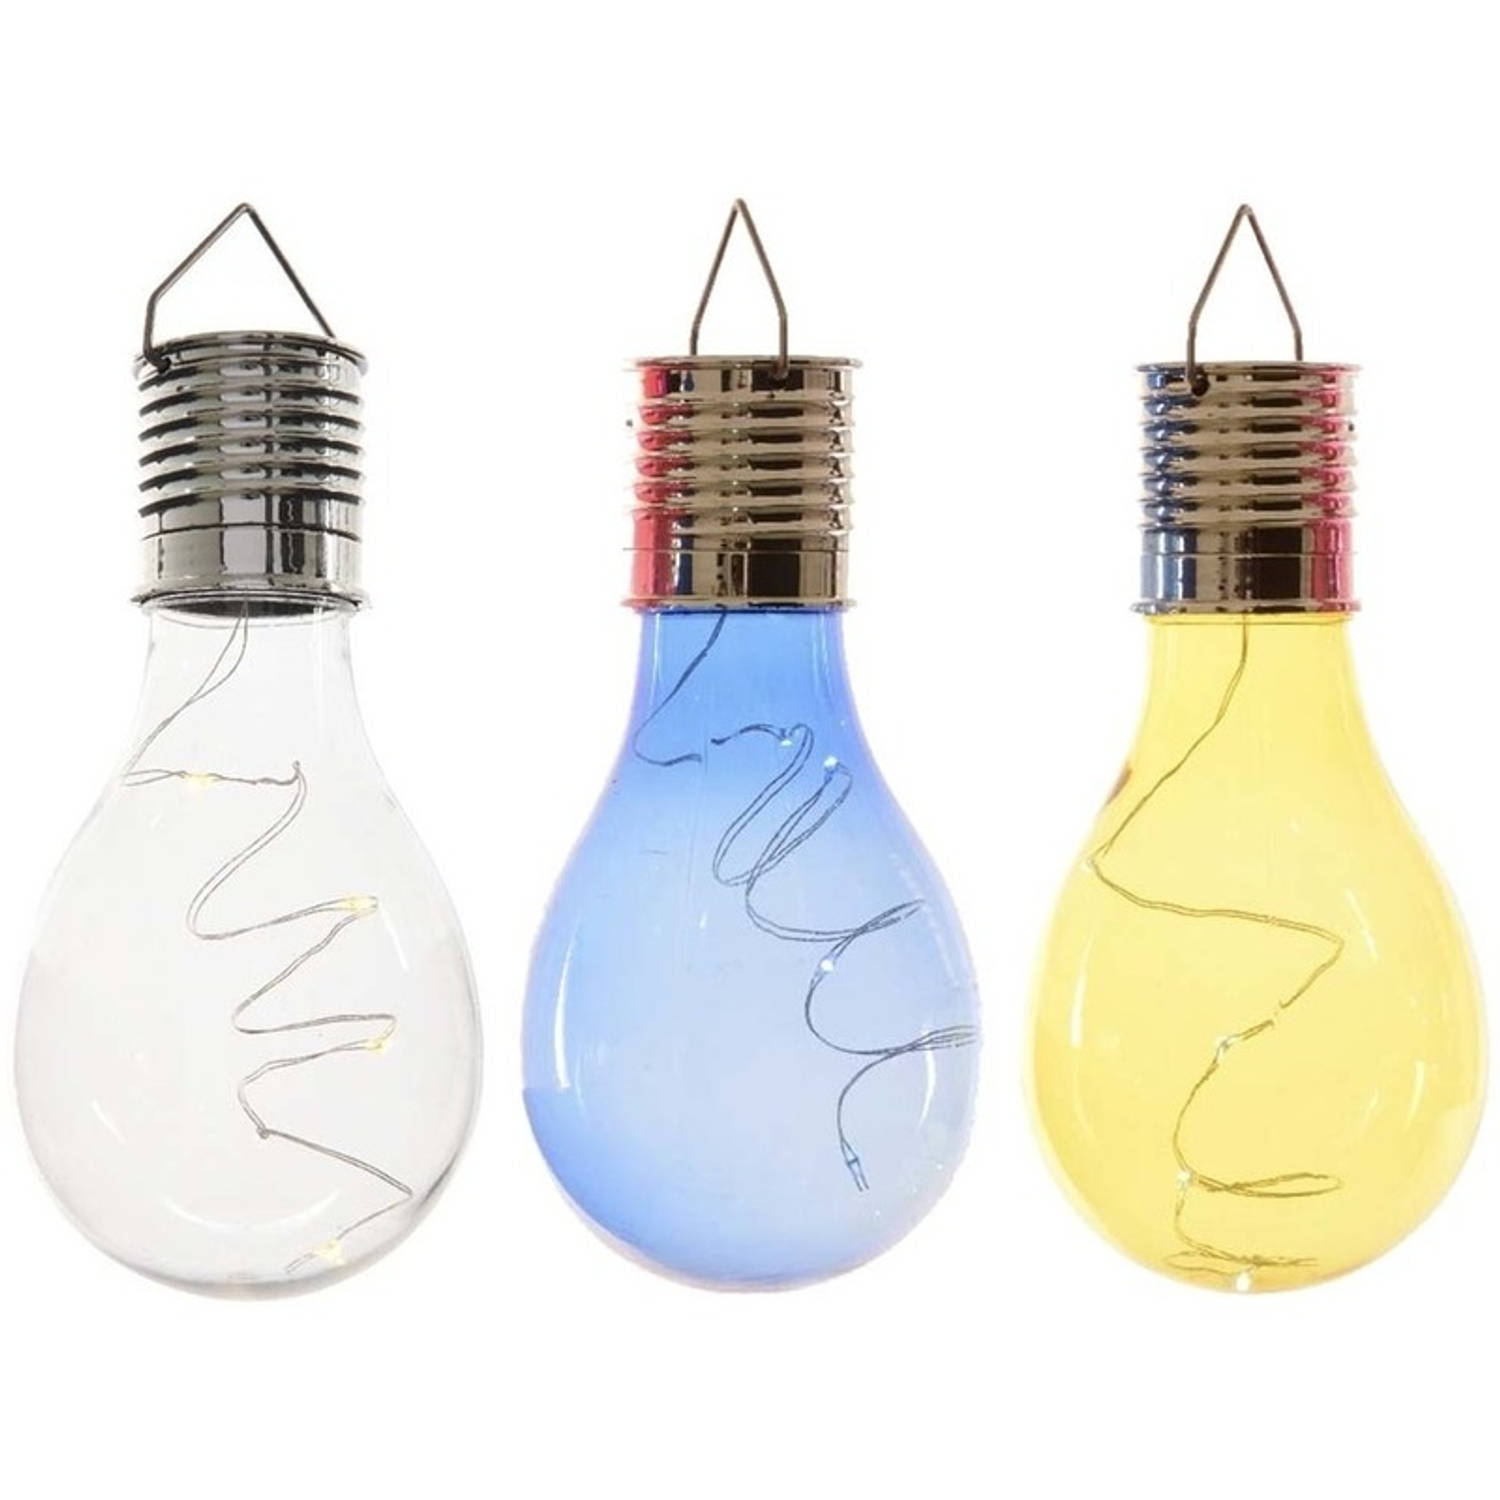 3x Buitenlampen/tuinlampen lampbolletjes/peertjes 14 cm transparant/blauw/geel - Buitenverlichting